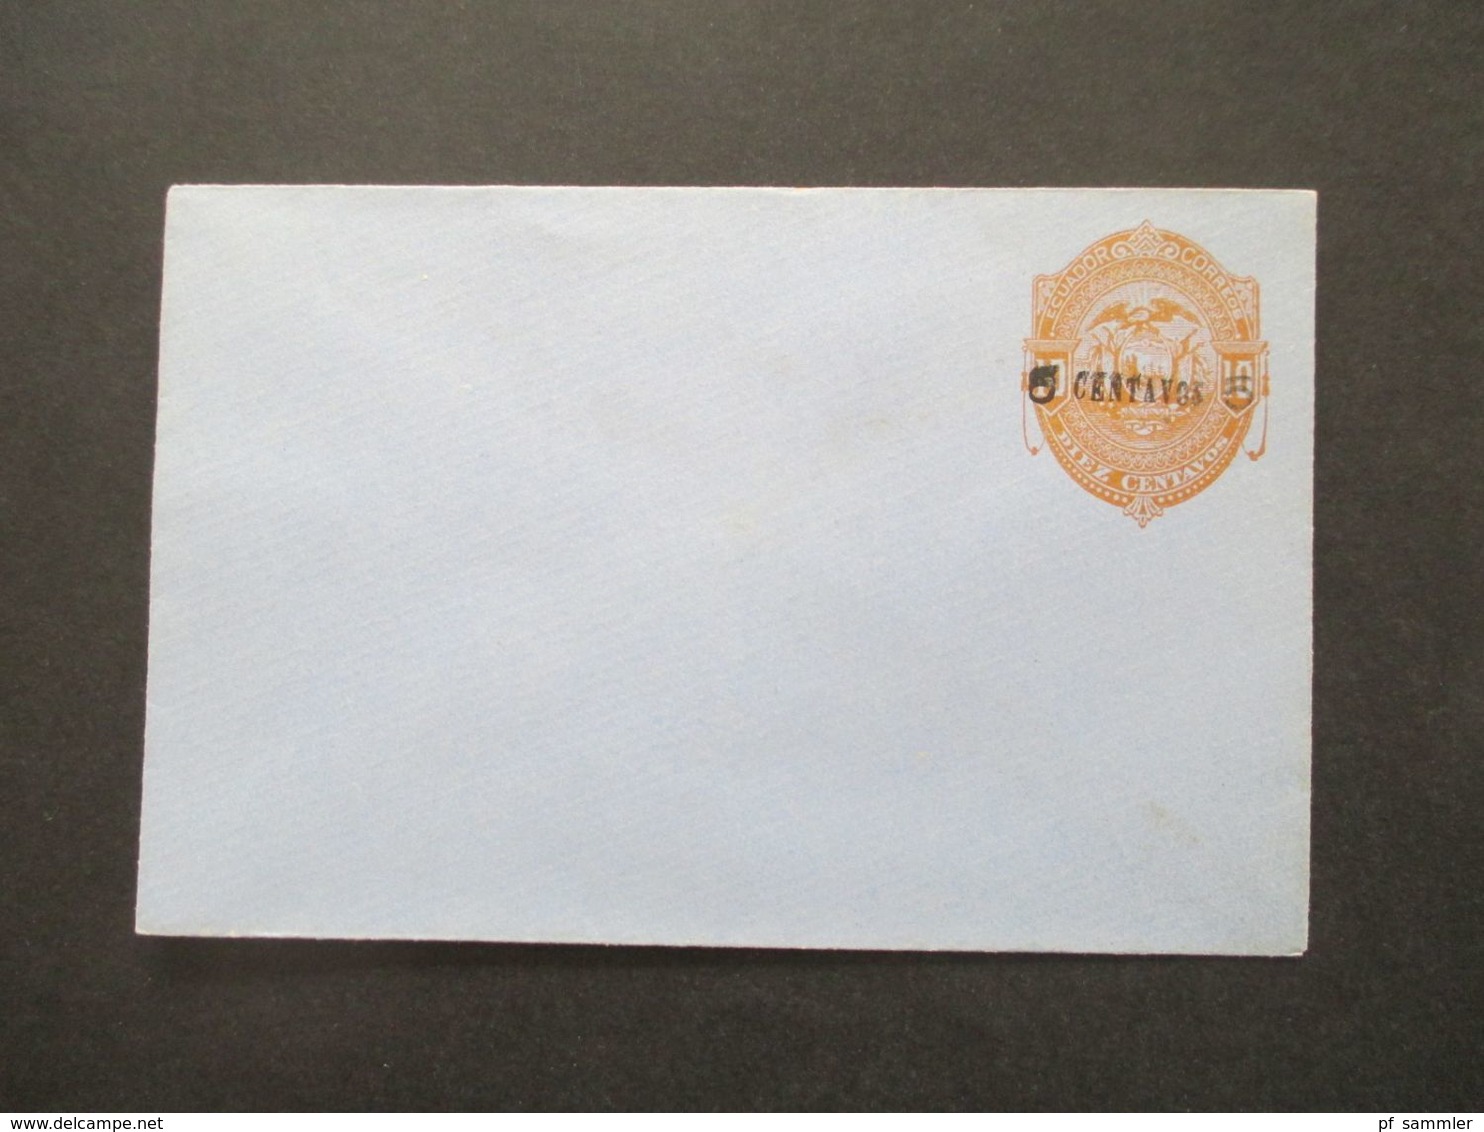 Ecuador um 1900 Ganzsachen Umschläge. Teilw. mit neuem Aufdruck. Union Postale Universelle 13 Umschläge. Teilw. farbig